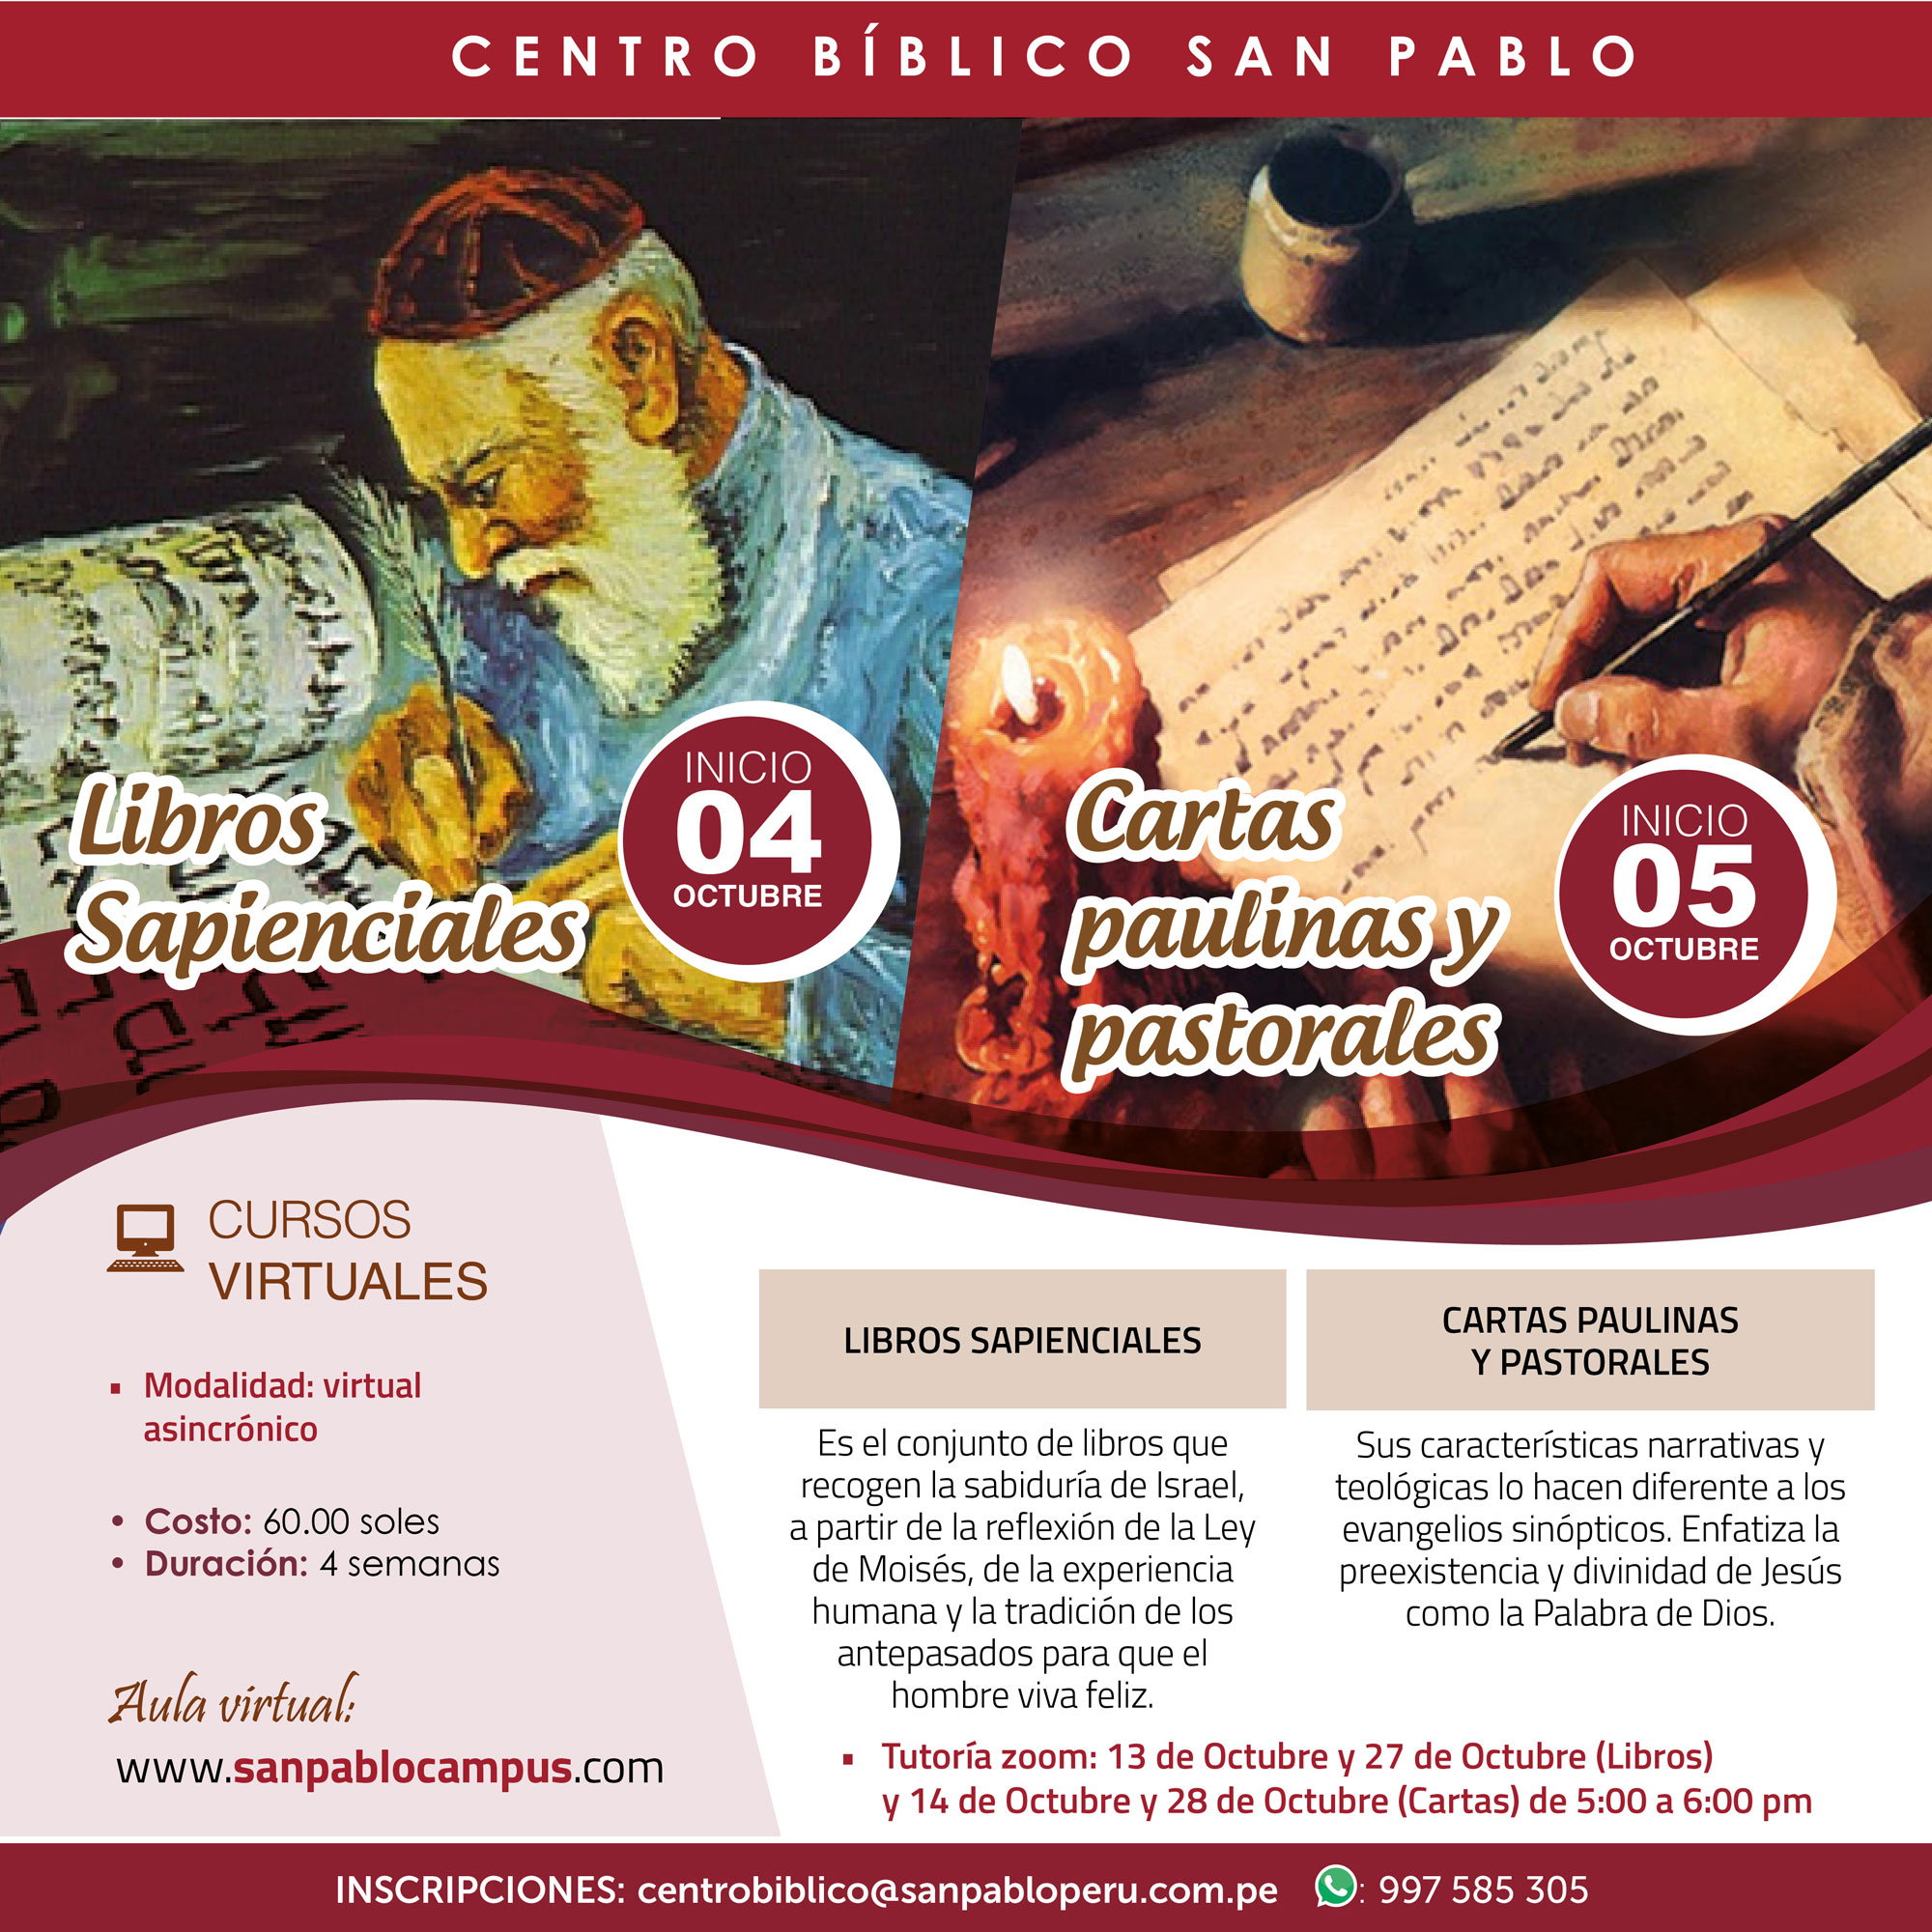 Cursos Virtuales Asincrónicos: “Libros Sapienciales” y “Cartas paulinas y pastorales”